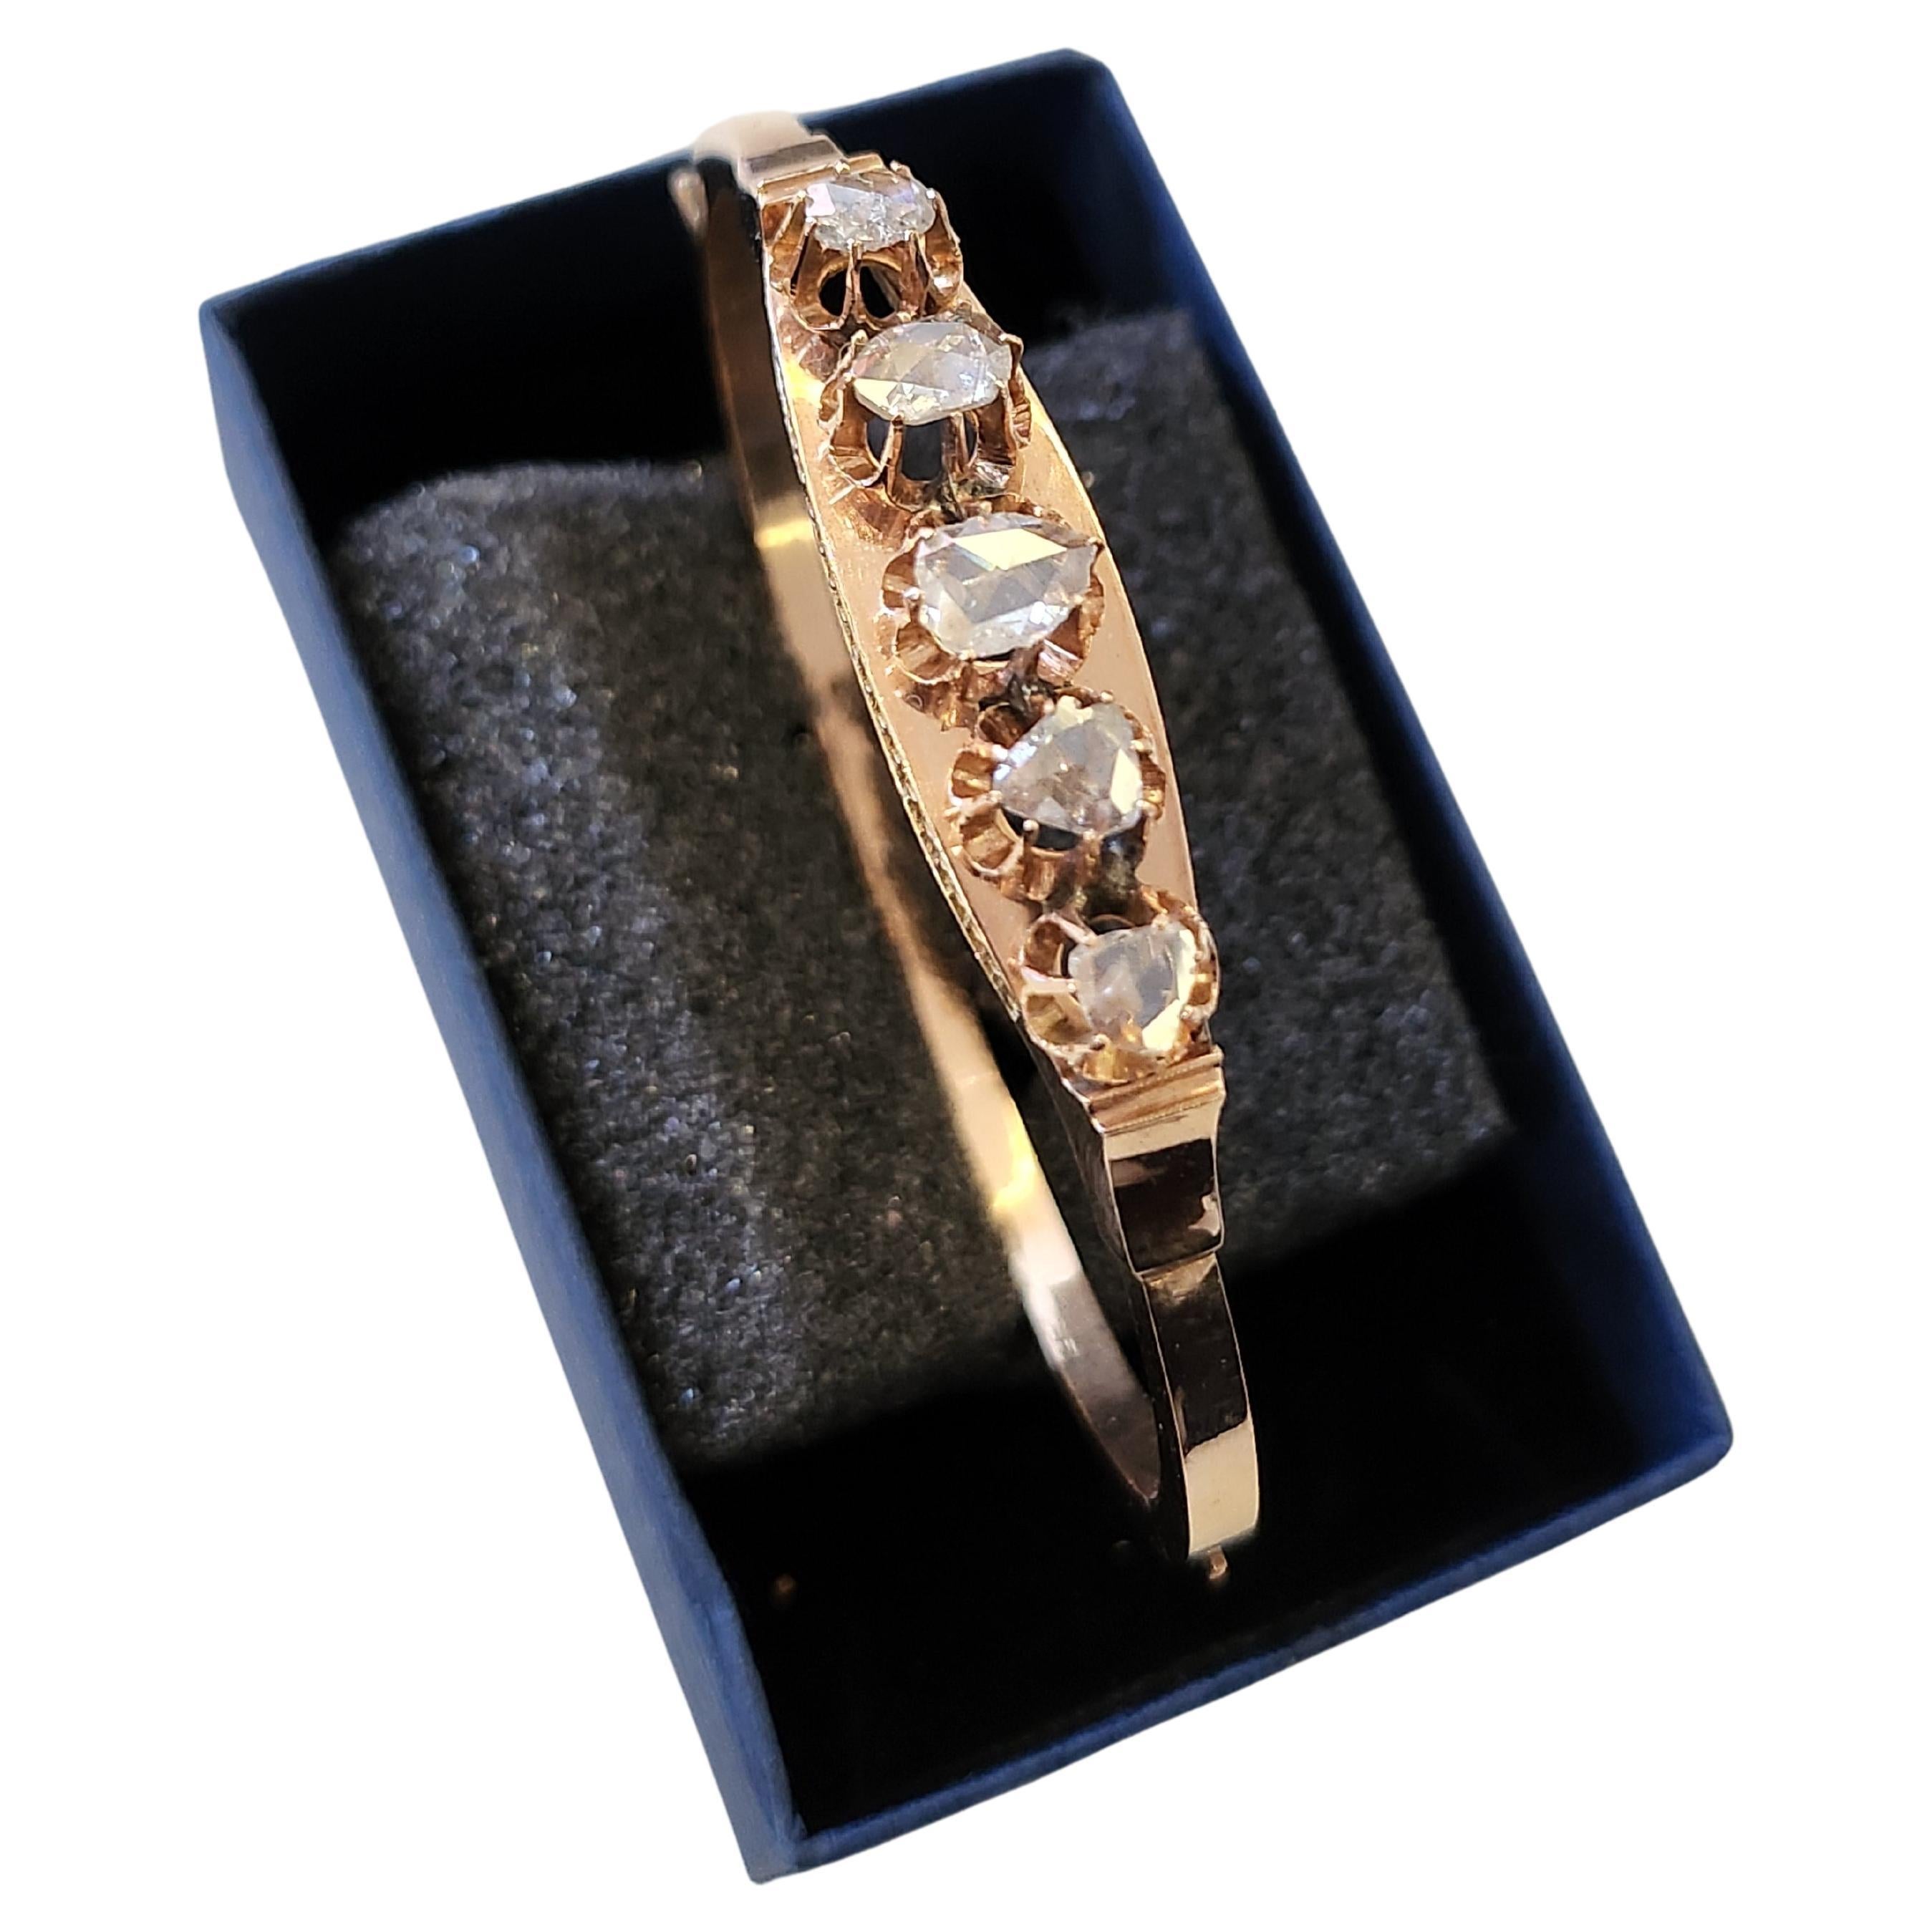 Bracelet russe ancien en diamant taillé en rose fait par un important fabricant feodor afanassiev Moscou avant 1899.c bracelet est composé de 5 grands diamants taillés en rose dans les pinces hautes chaque pierre est 5.85mm/4.60mm/4.75mm/4.61mm